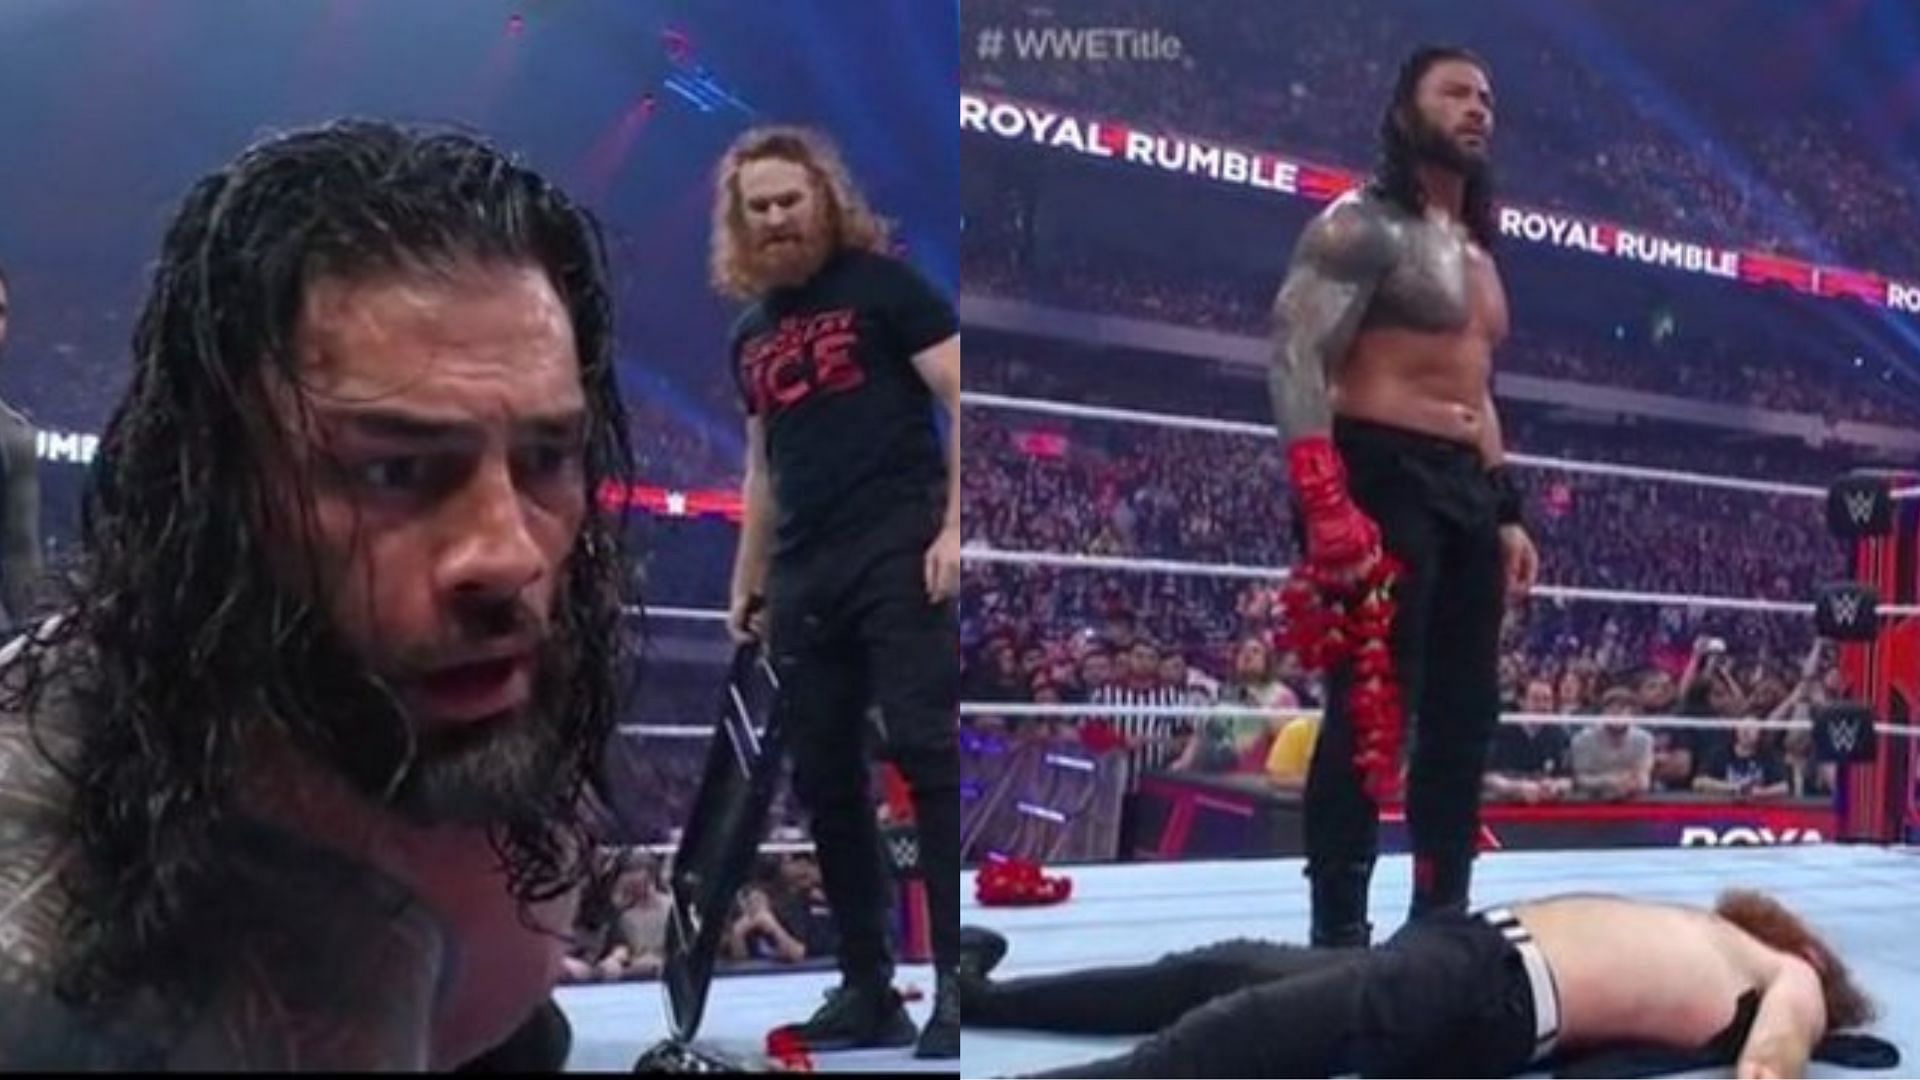 Sami Zayn has betrayed Roman Reigns at the Royal Rumble